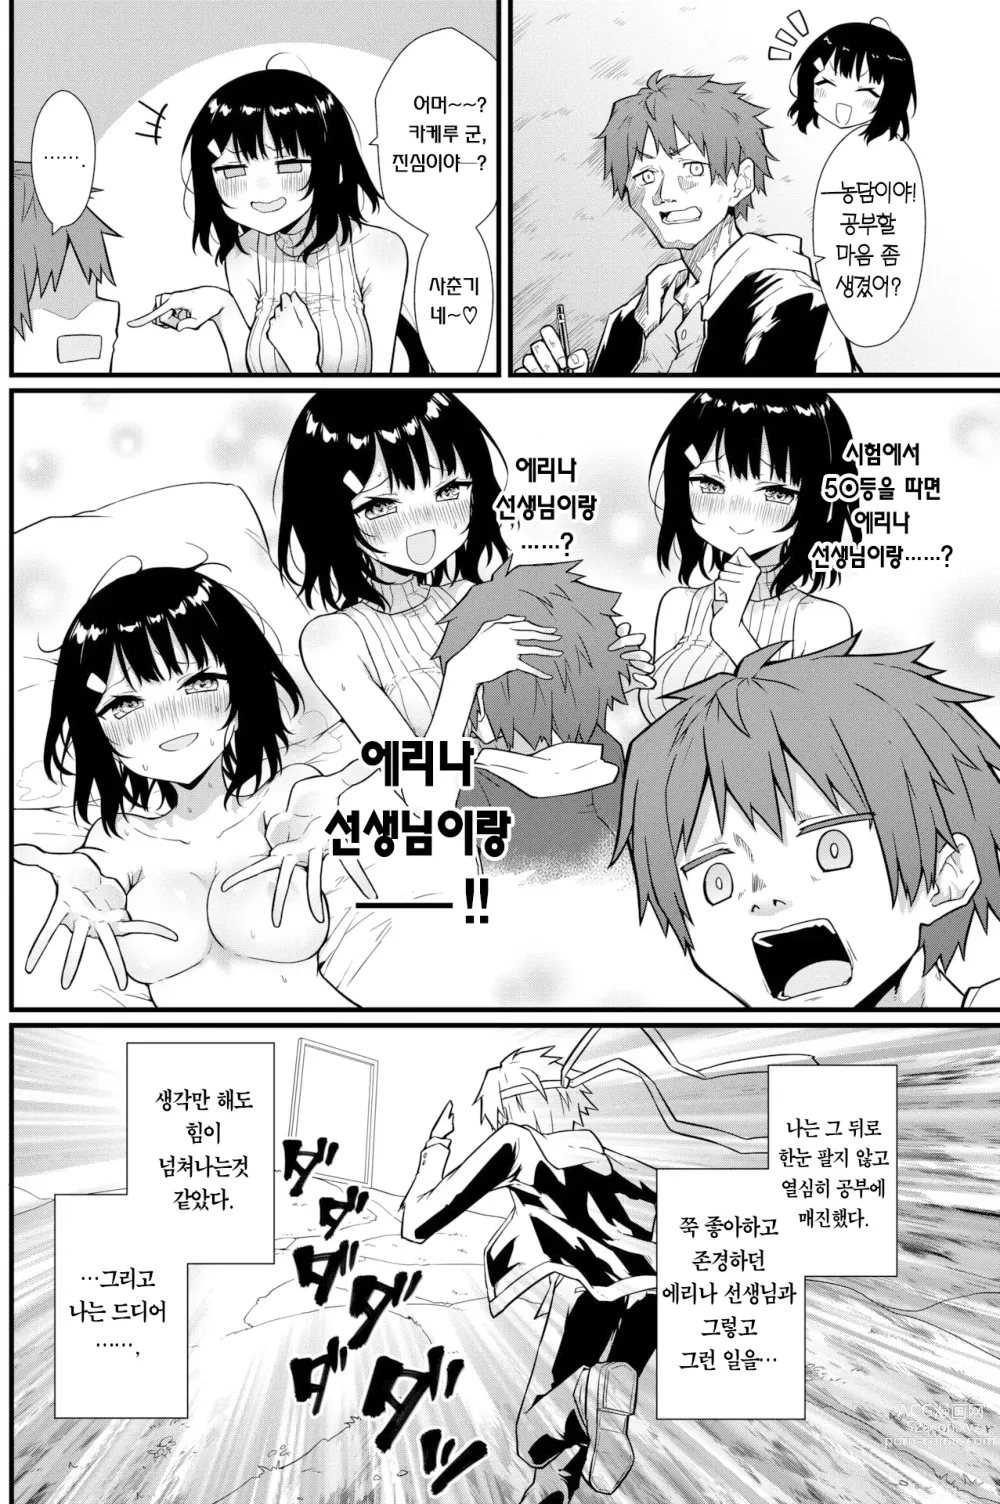 Page 3 of manga 선생님에게 듣는 약은 없다! (decensored)